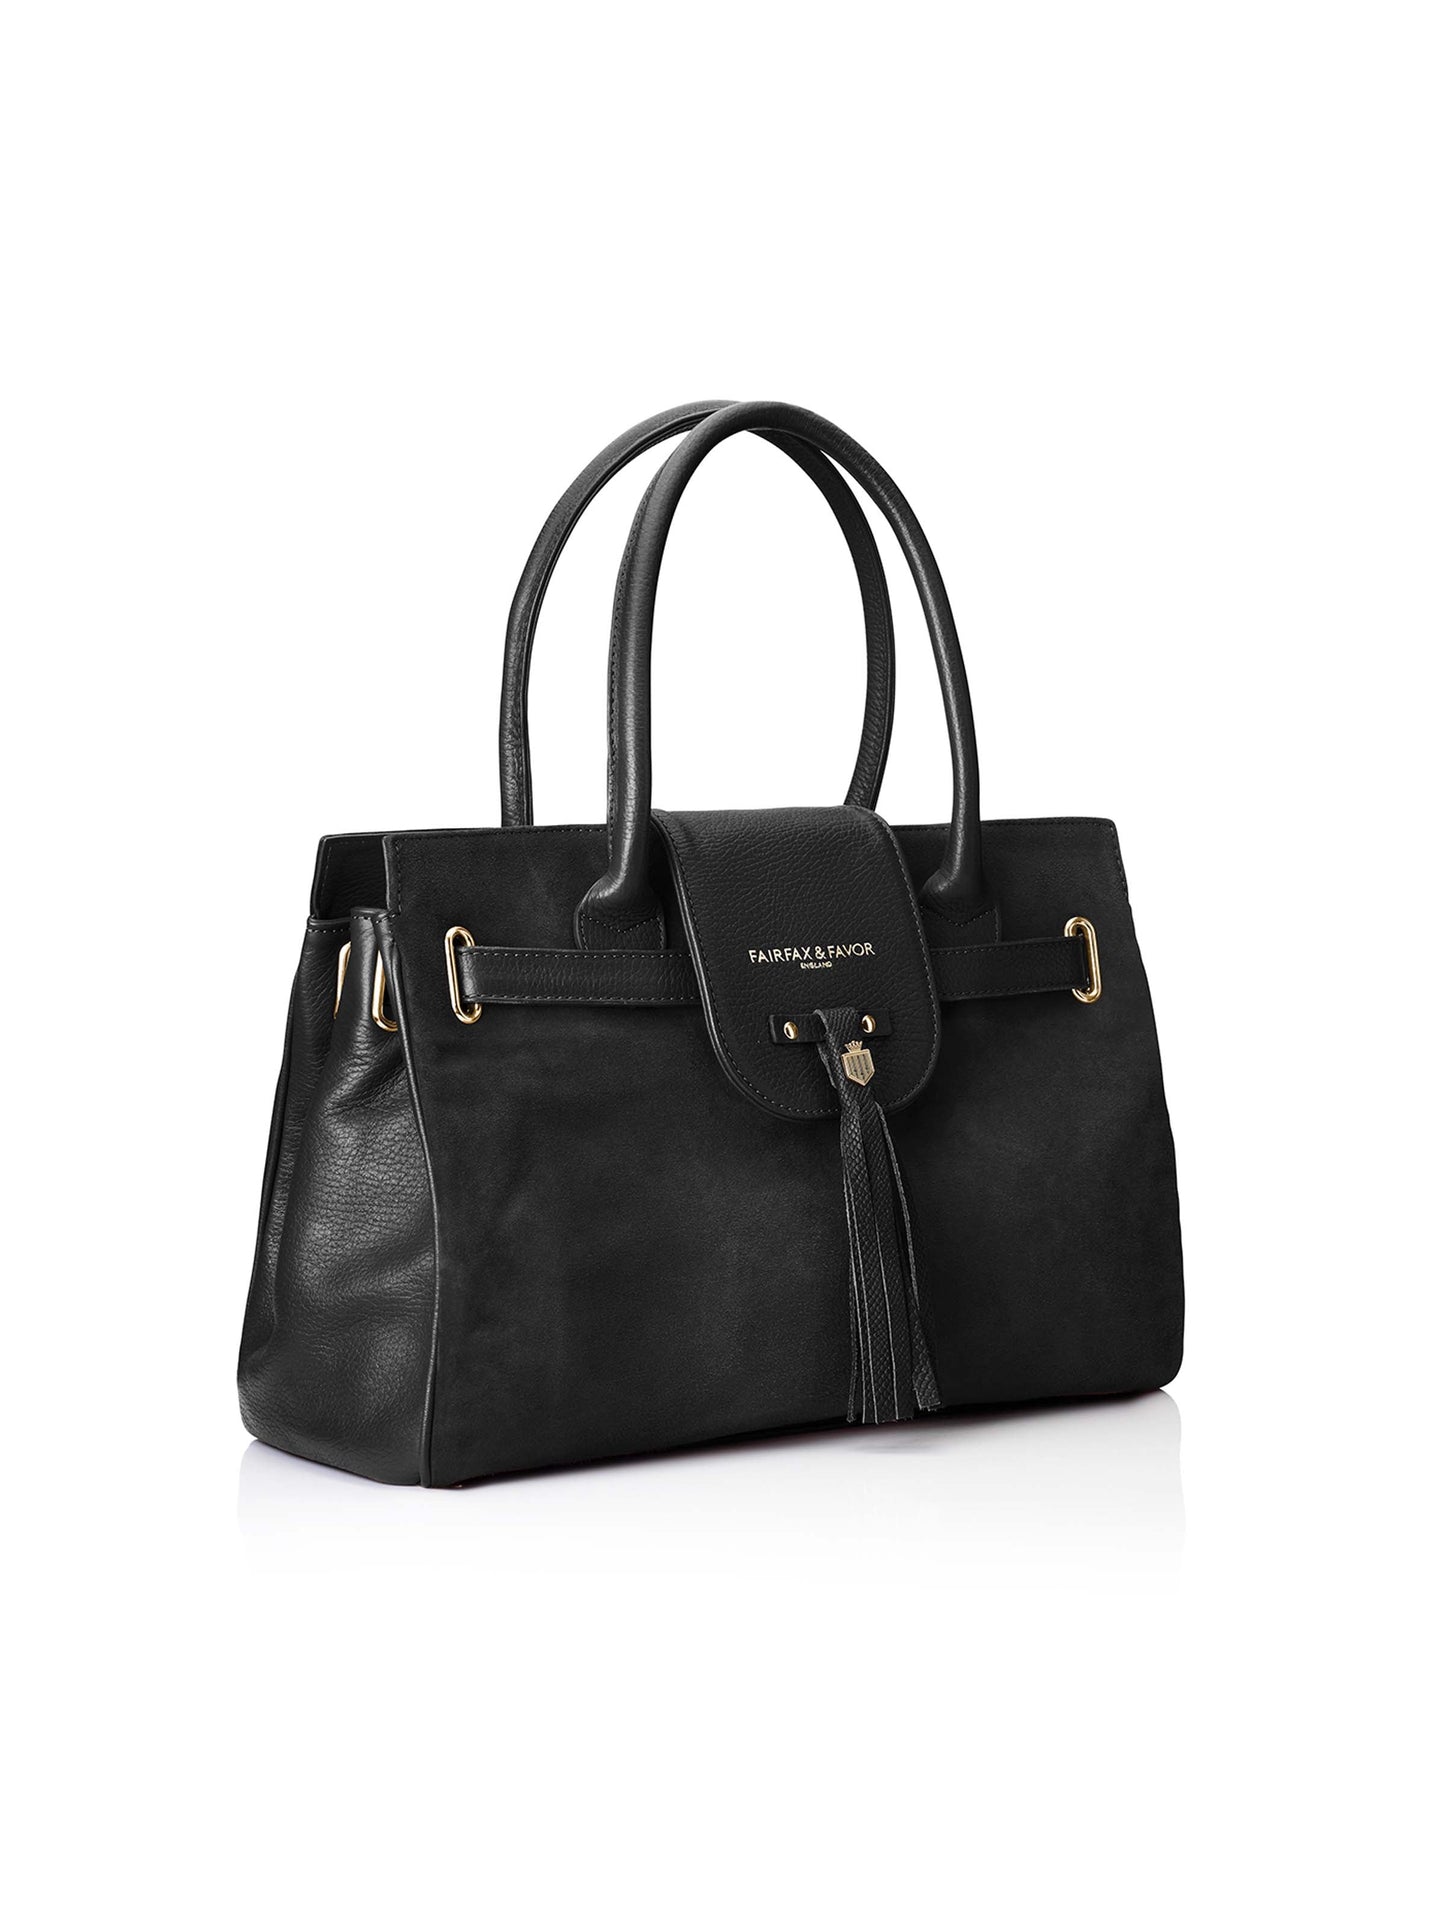 The Windsor Handbag - Black Suede